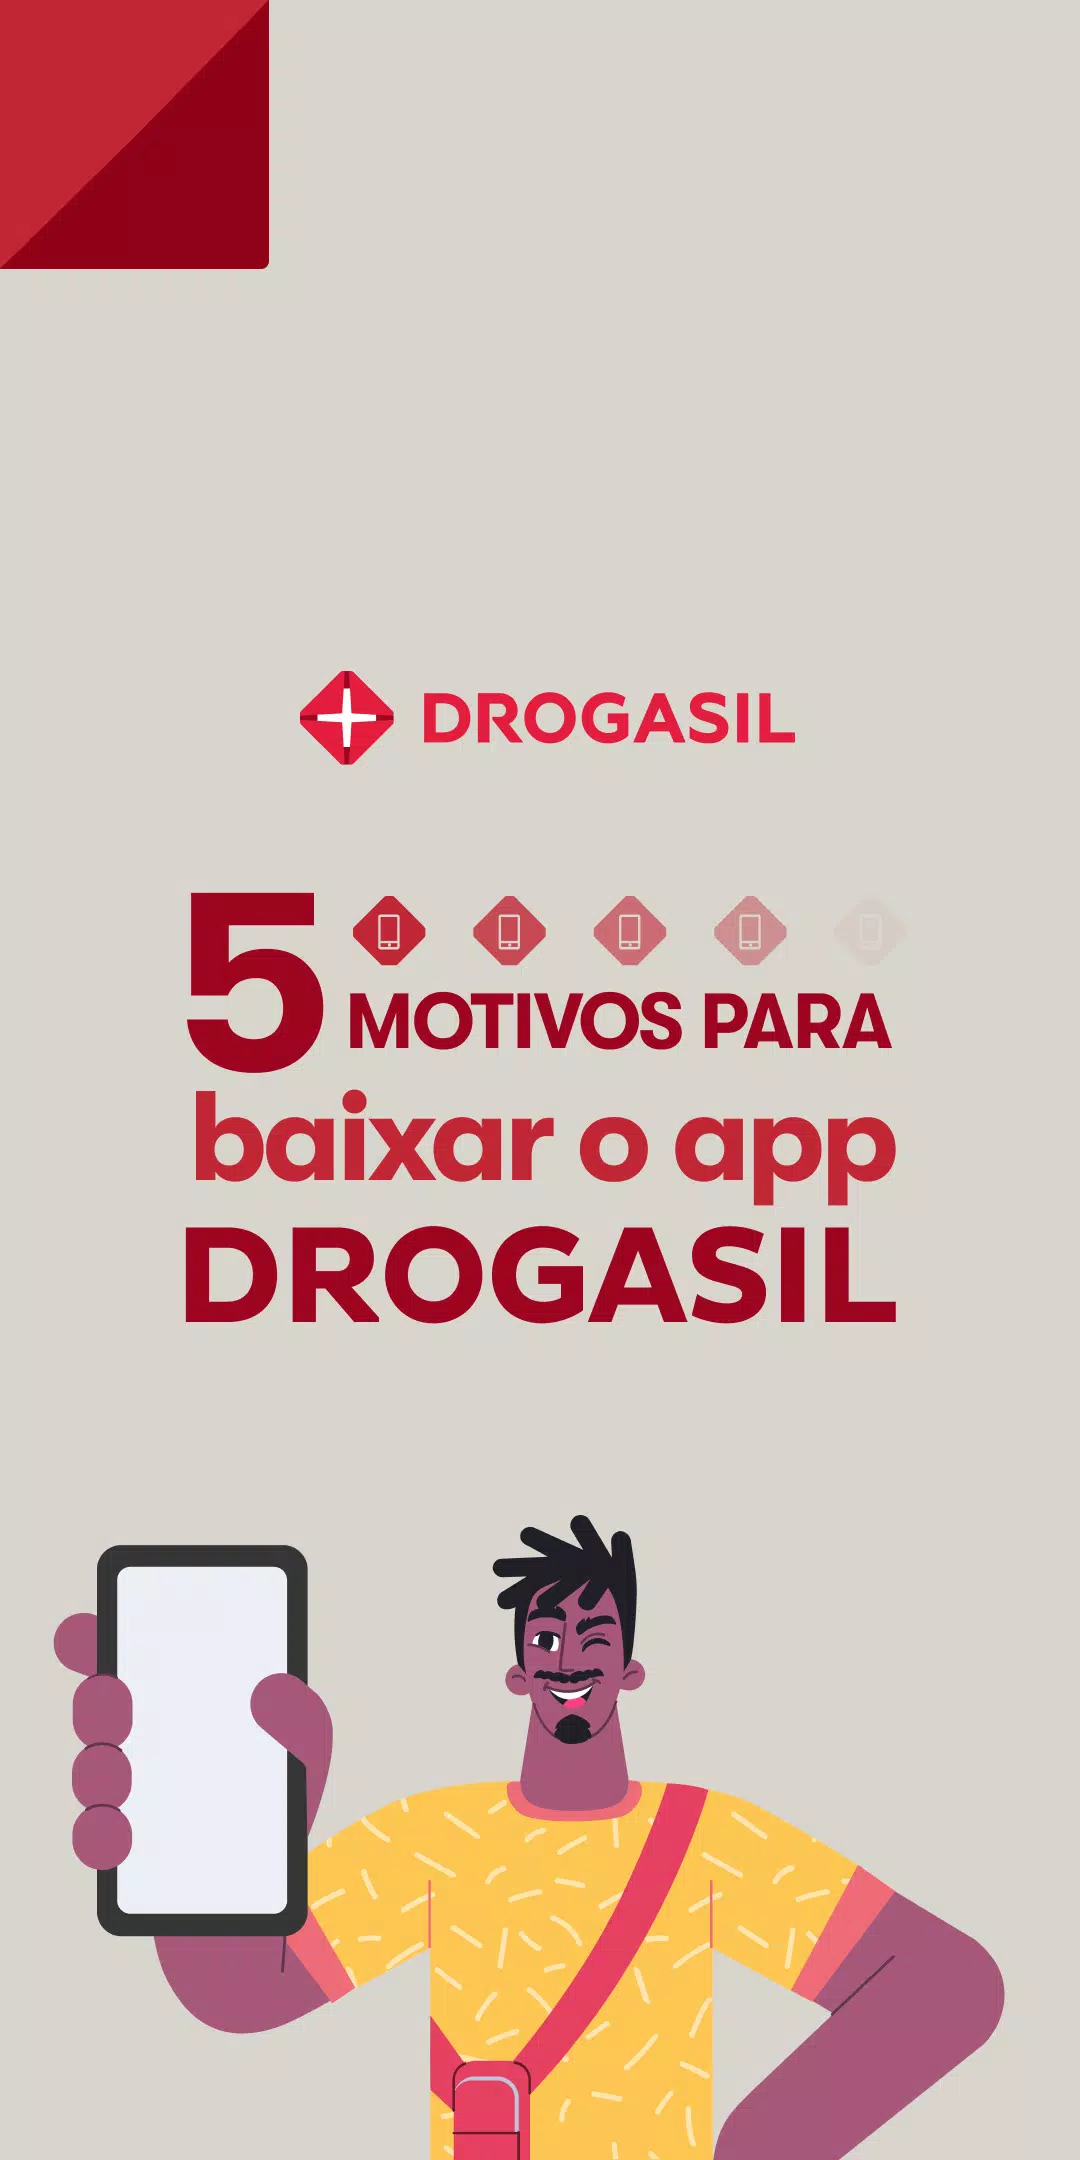 Raia Drogasil agora tem aplicativos para quem quer emagrecer